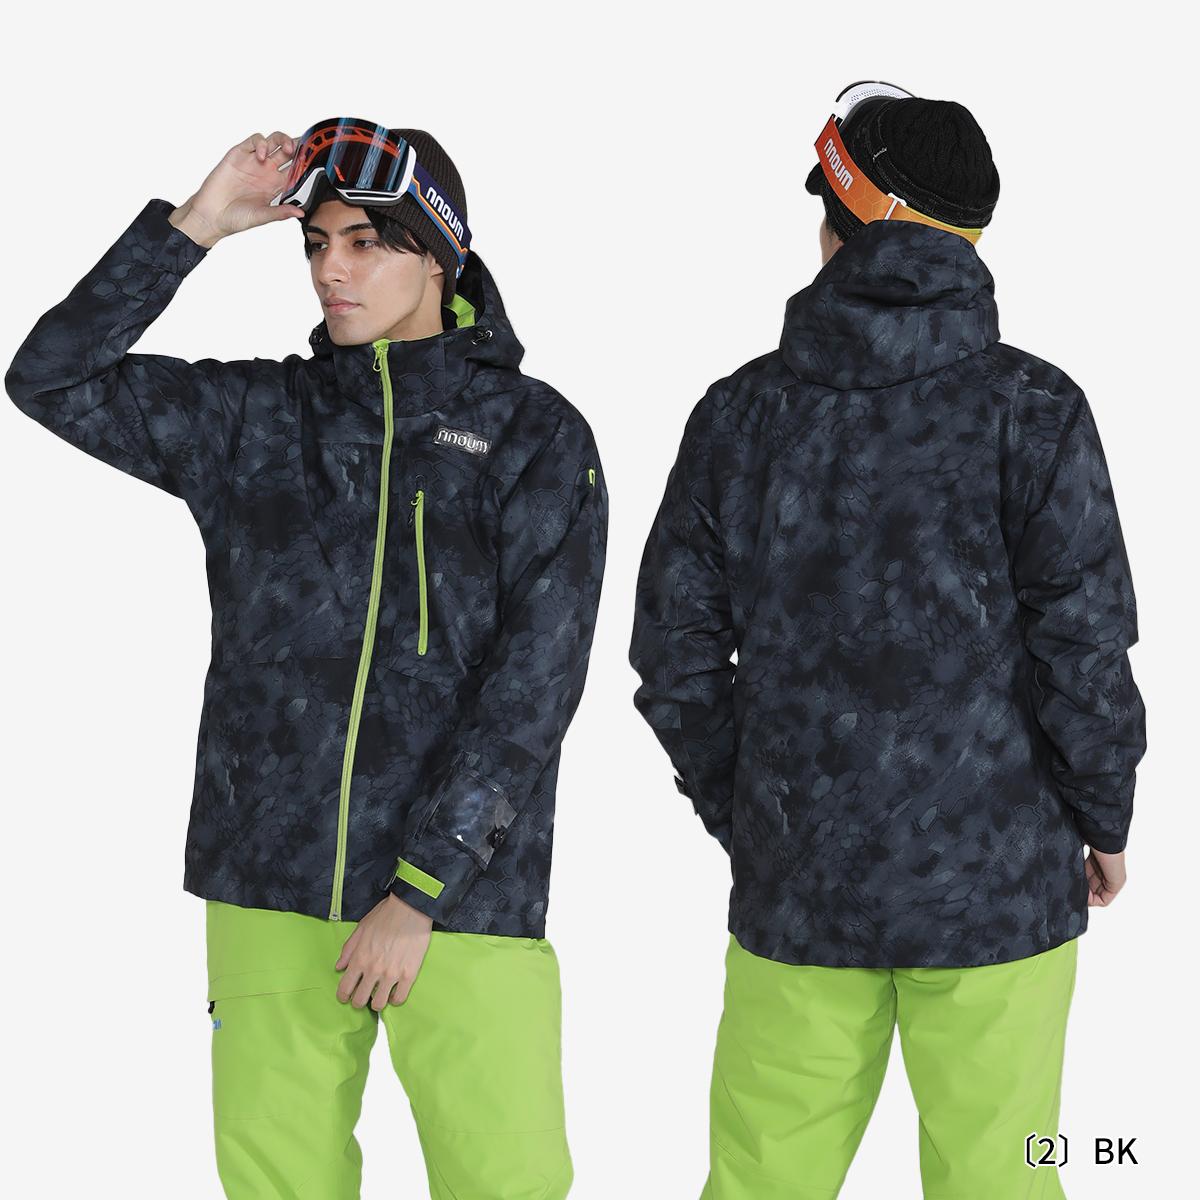 スキーウェア メンズ レディース 上下セット スノーボードウェア スキーウエア NNOUM ノアム 耐水圧20000ml 軽量 防寒 保温 裾丈調節  ジャケット パンツ